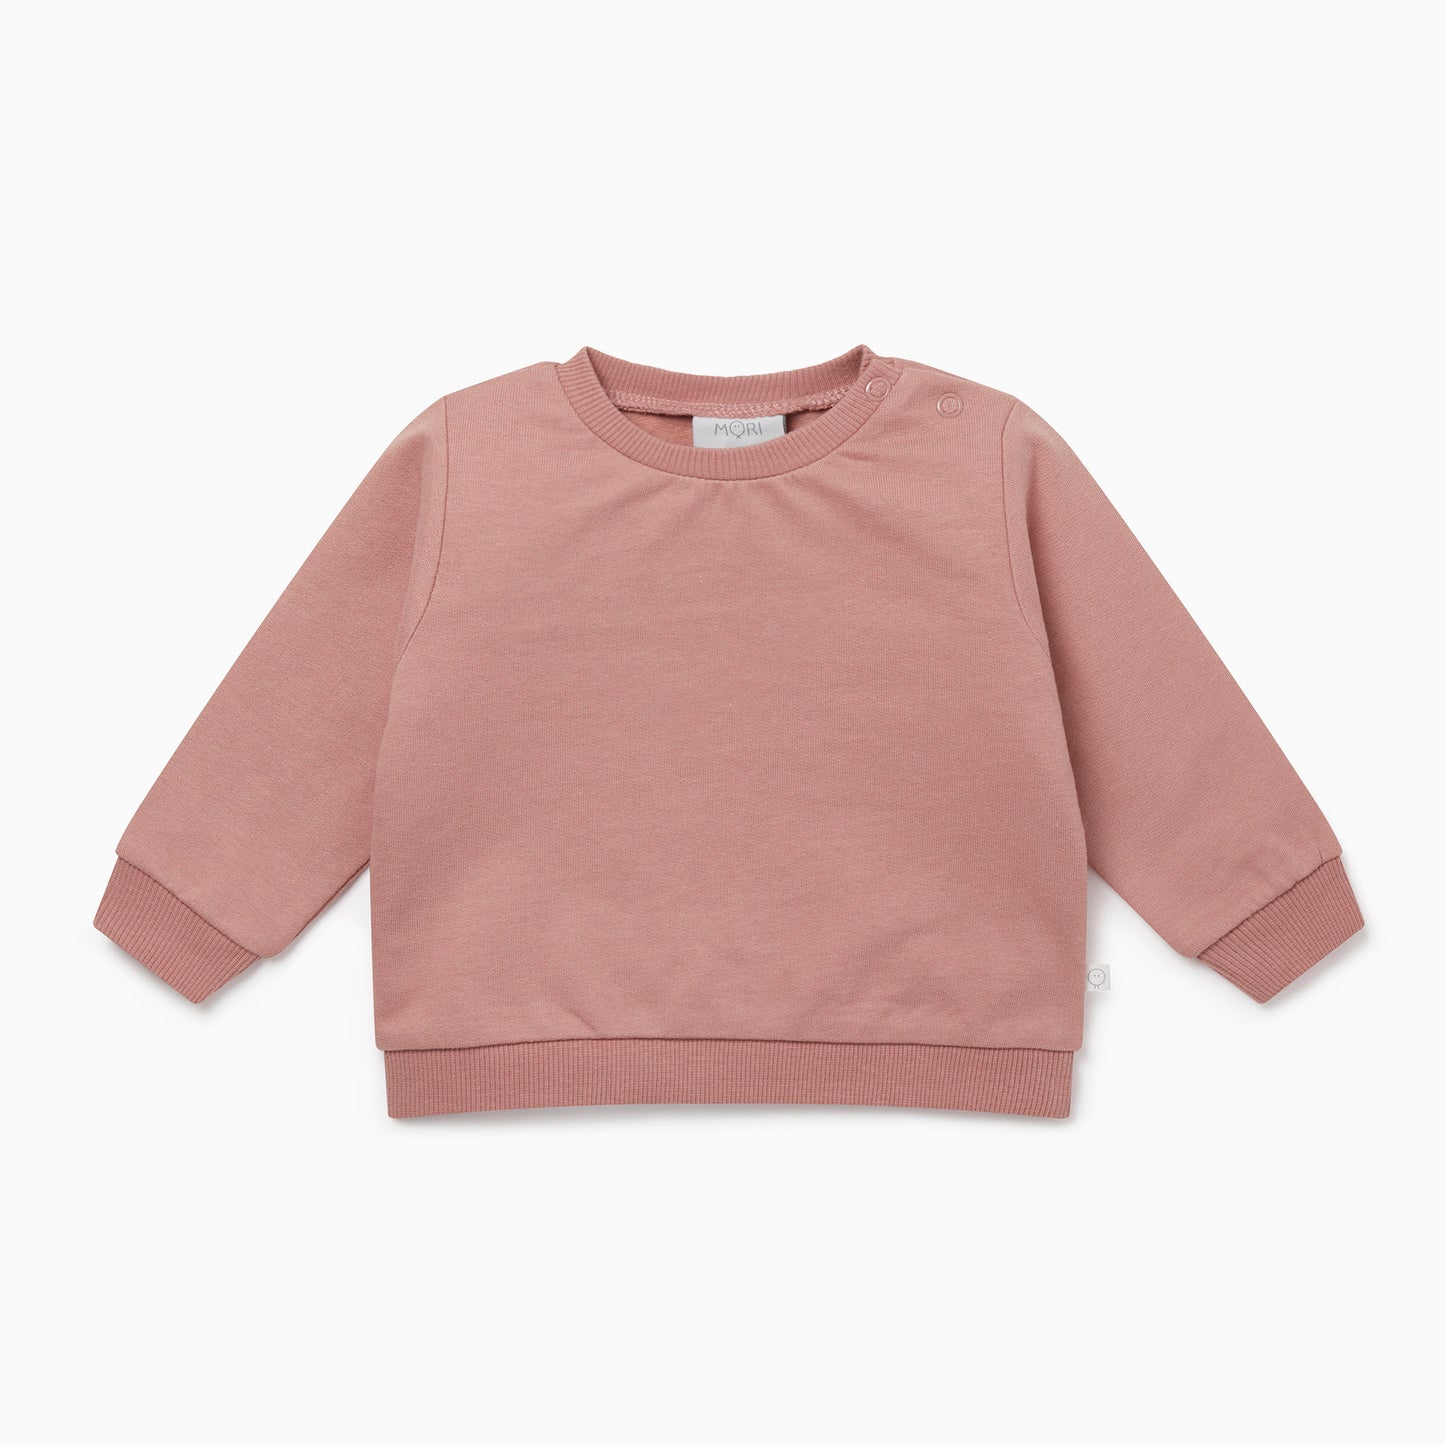 Blush plain sweatshirt